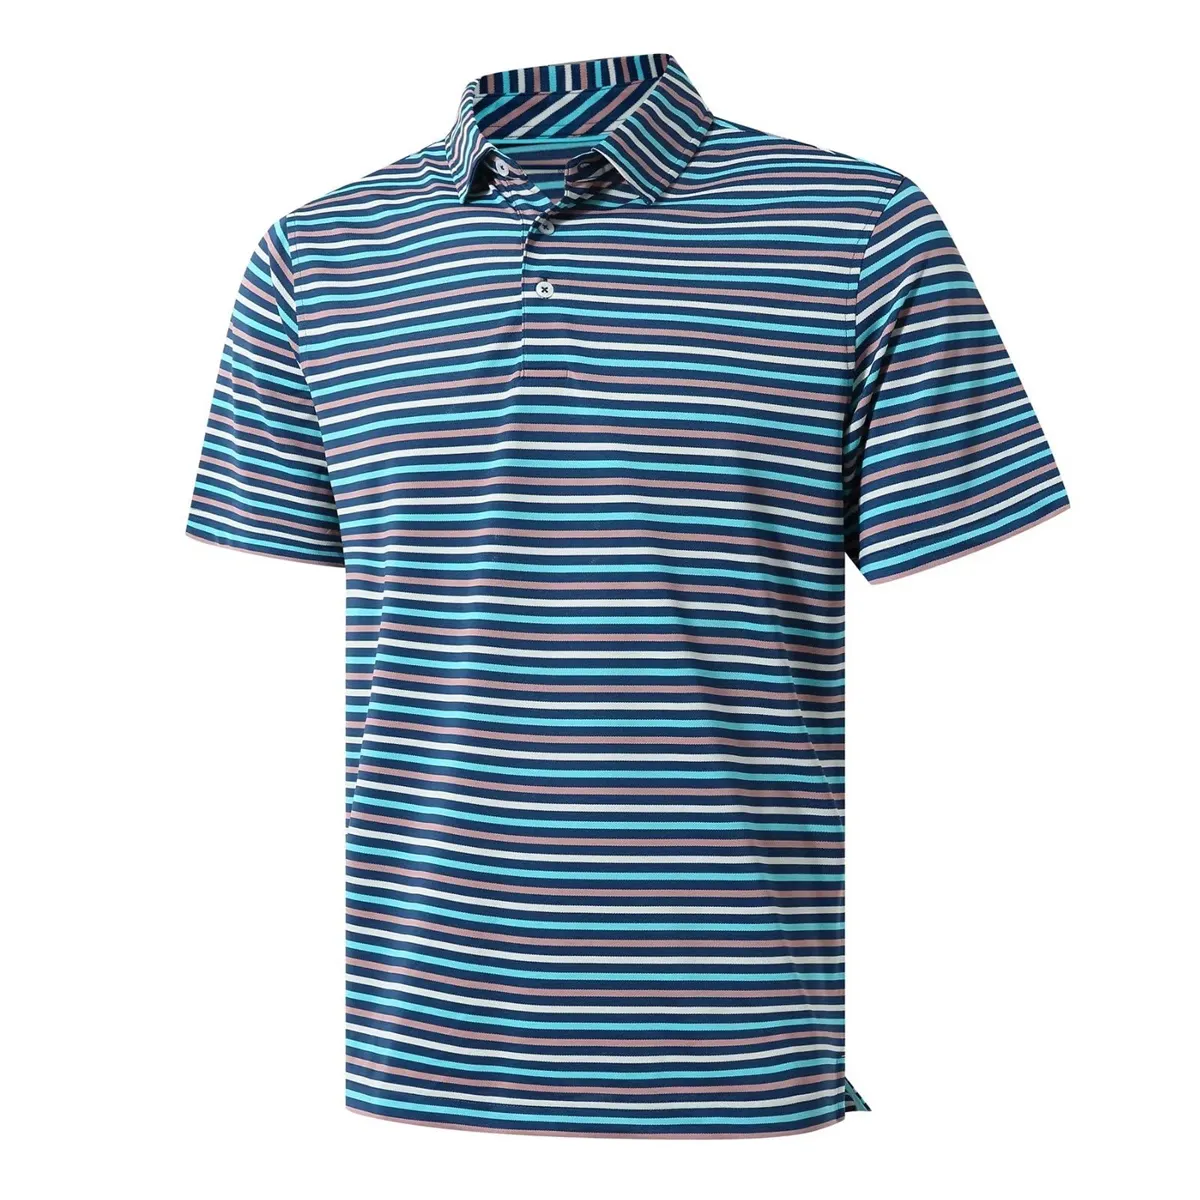 Polos de golf Anti Pilling, camiseta personalizada de algodón y poliéster azul marino, polos cortados y cosidos con serigrafía para hombres